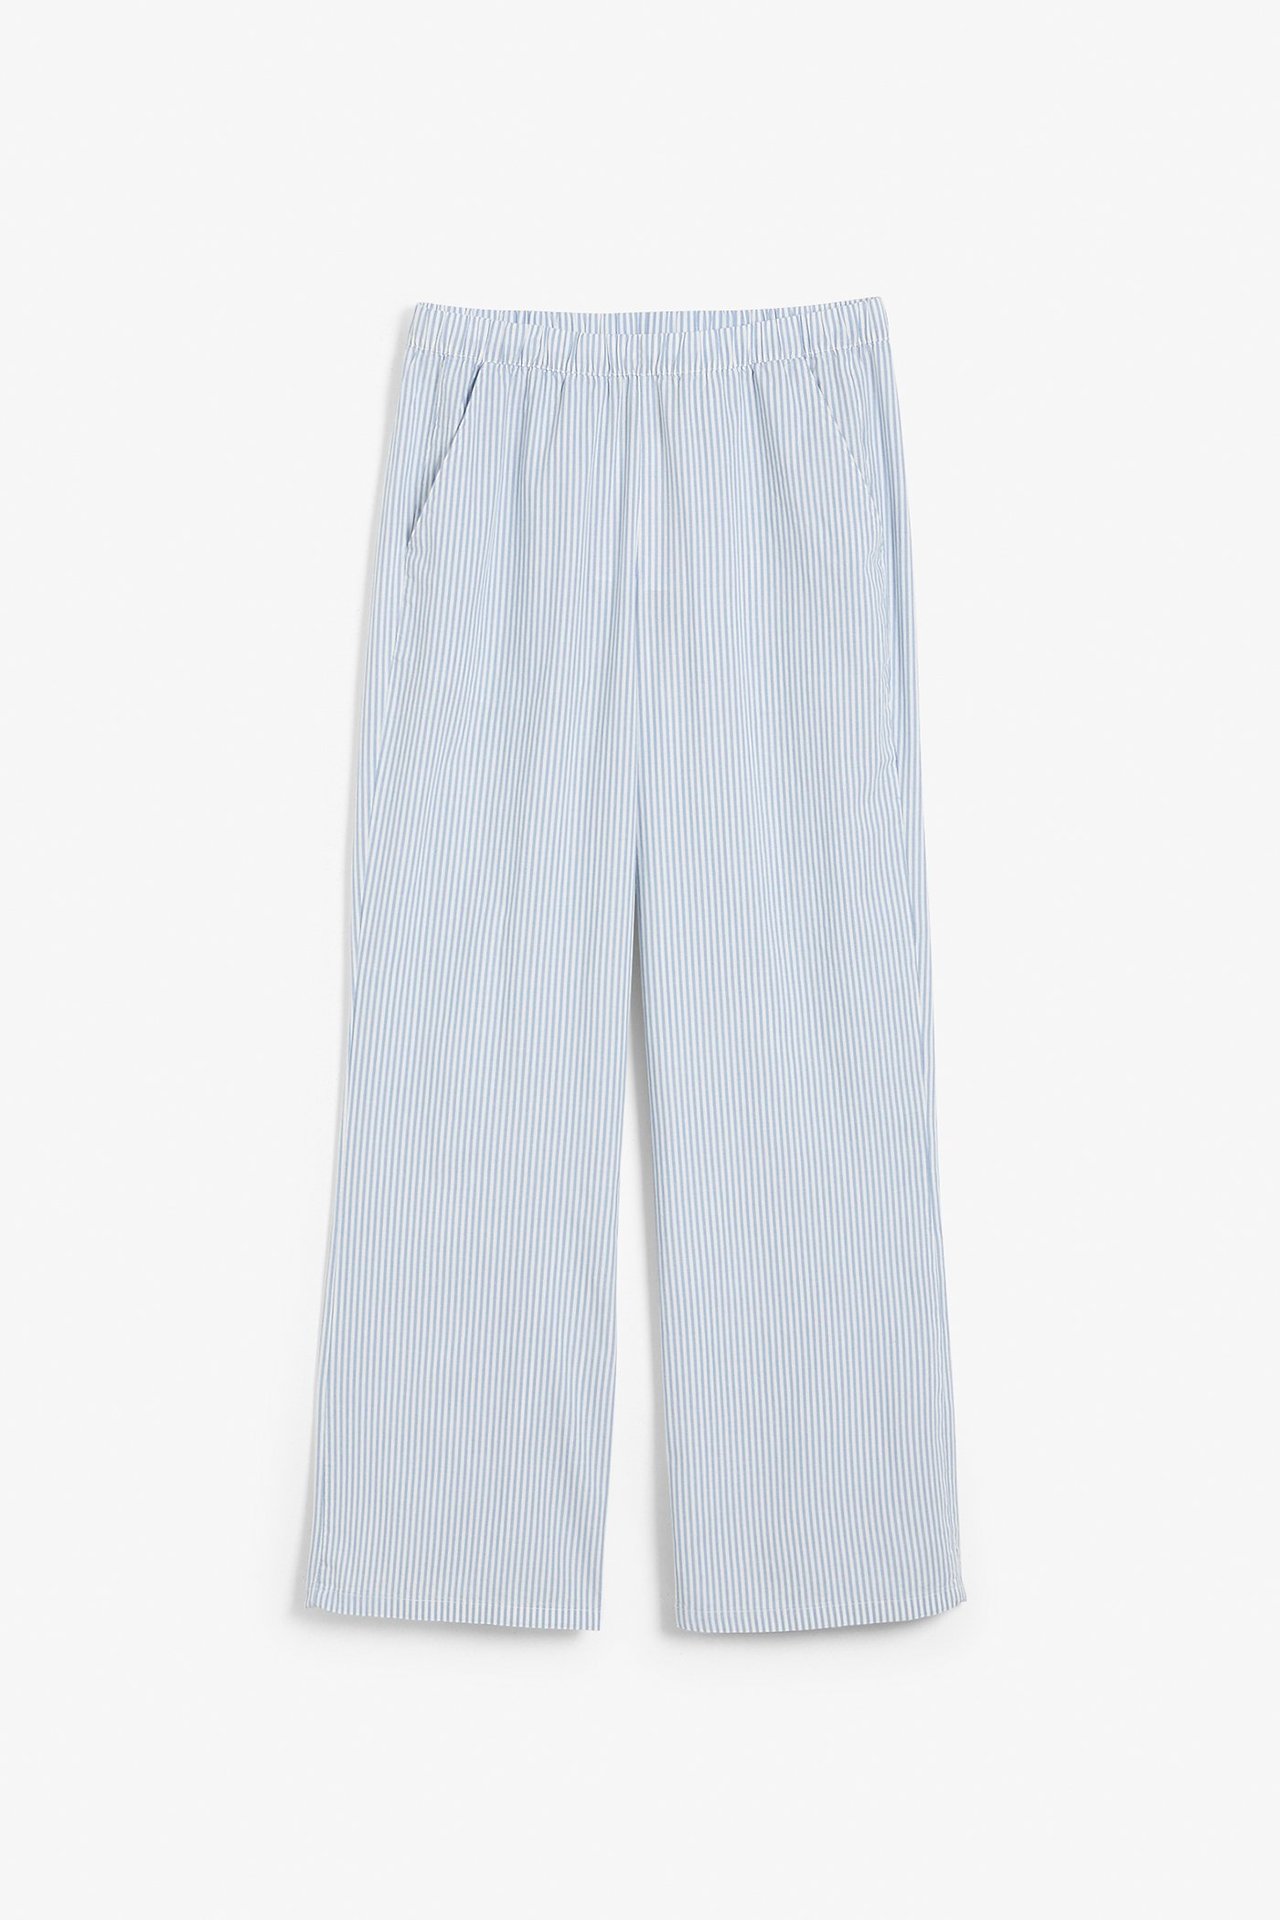 Pyjamasbukse Blå - null - 2